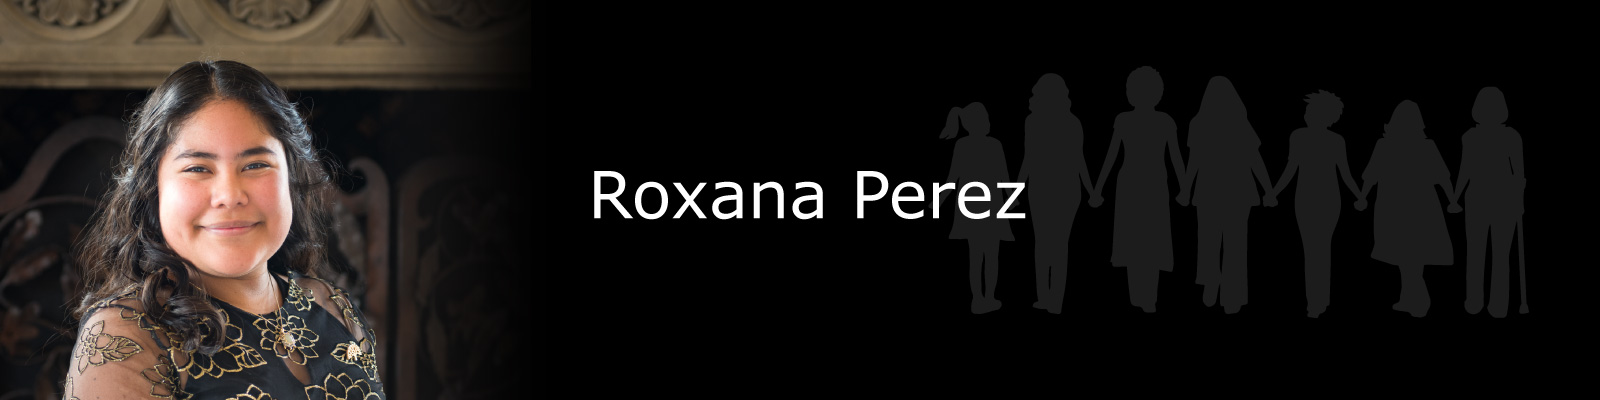 Photo of Roxana Perez.